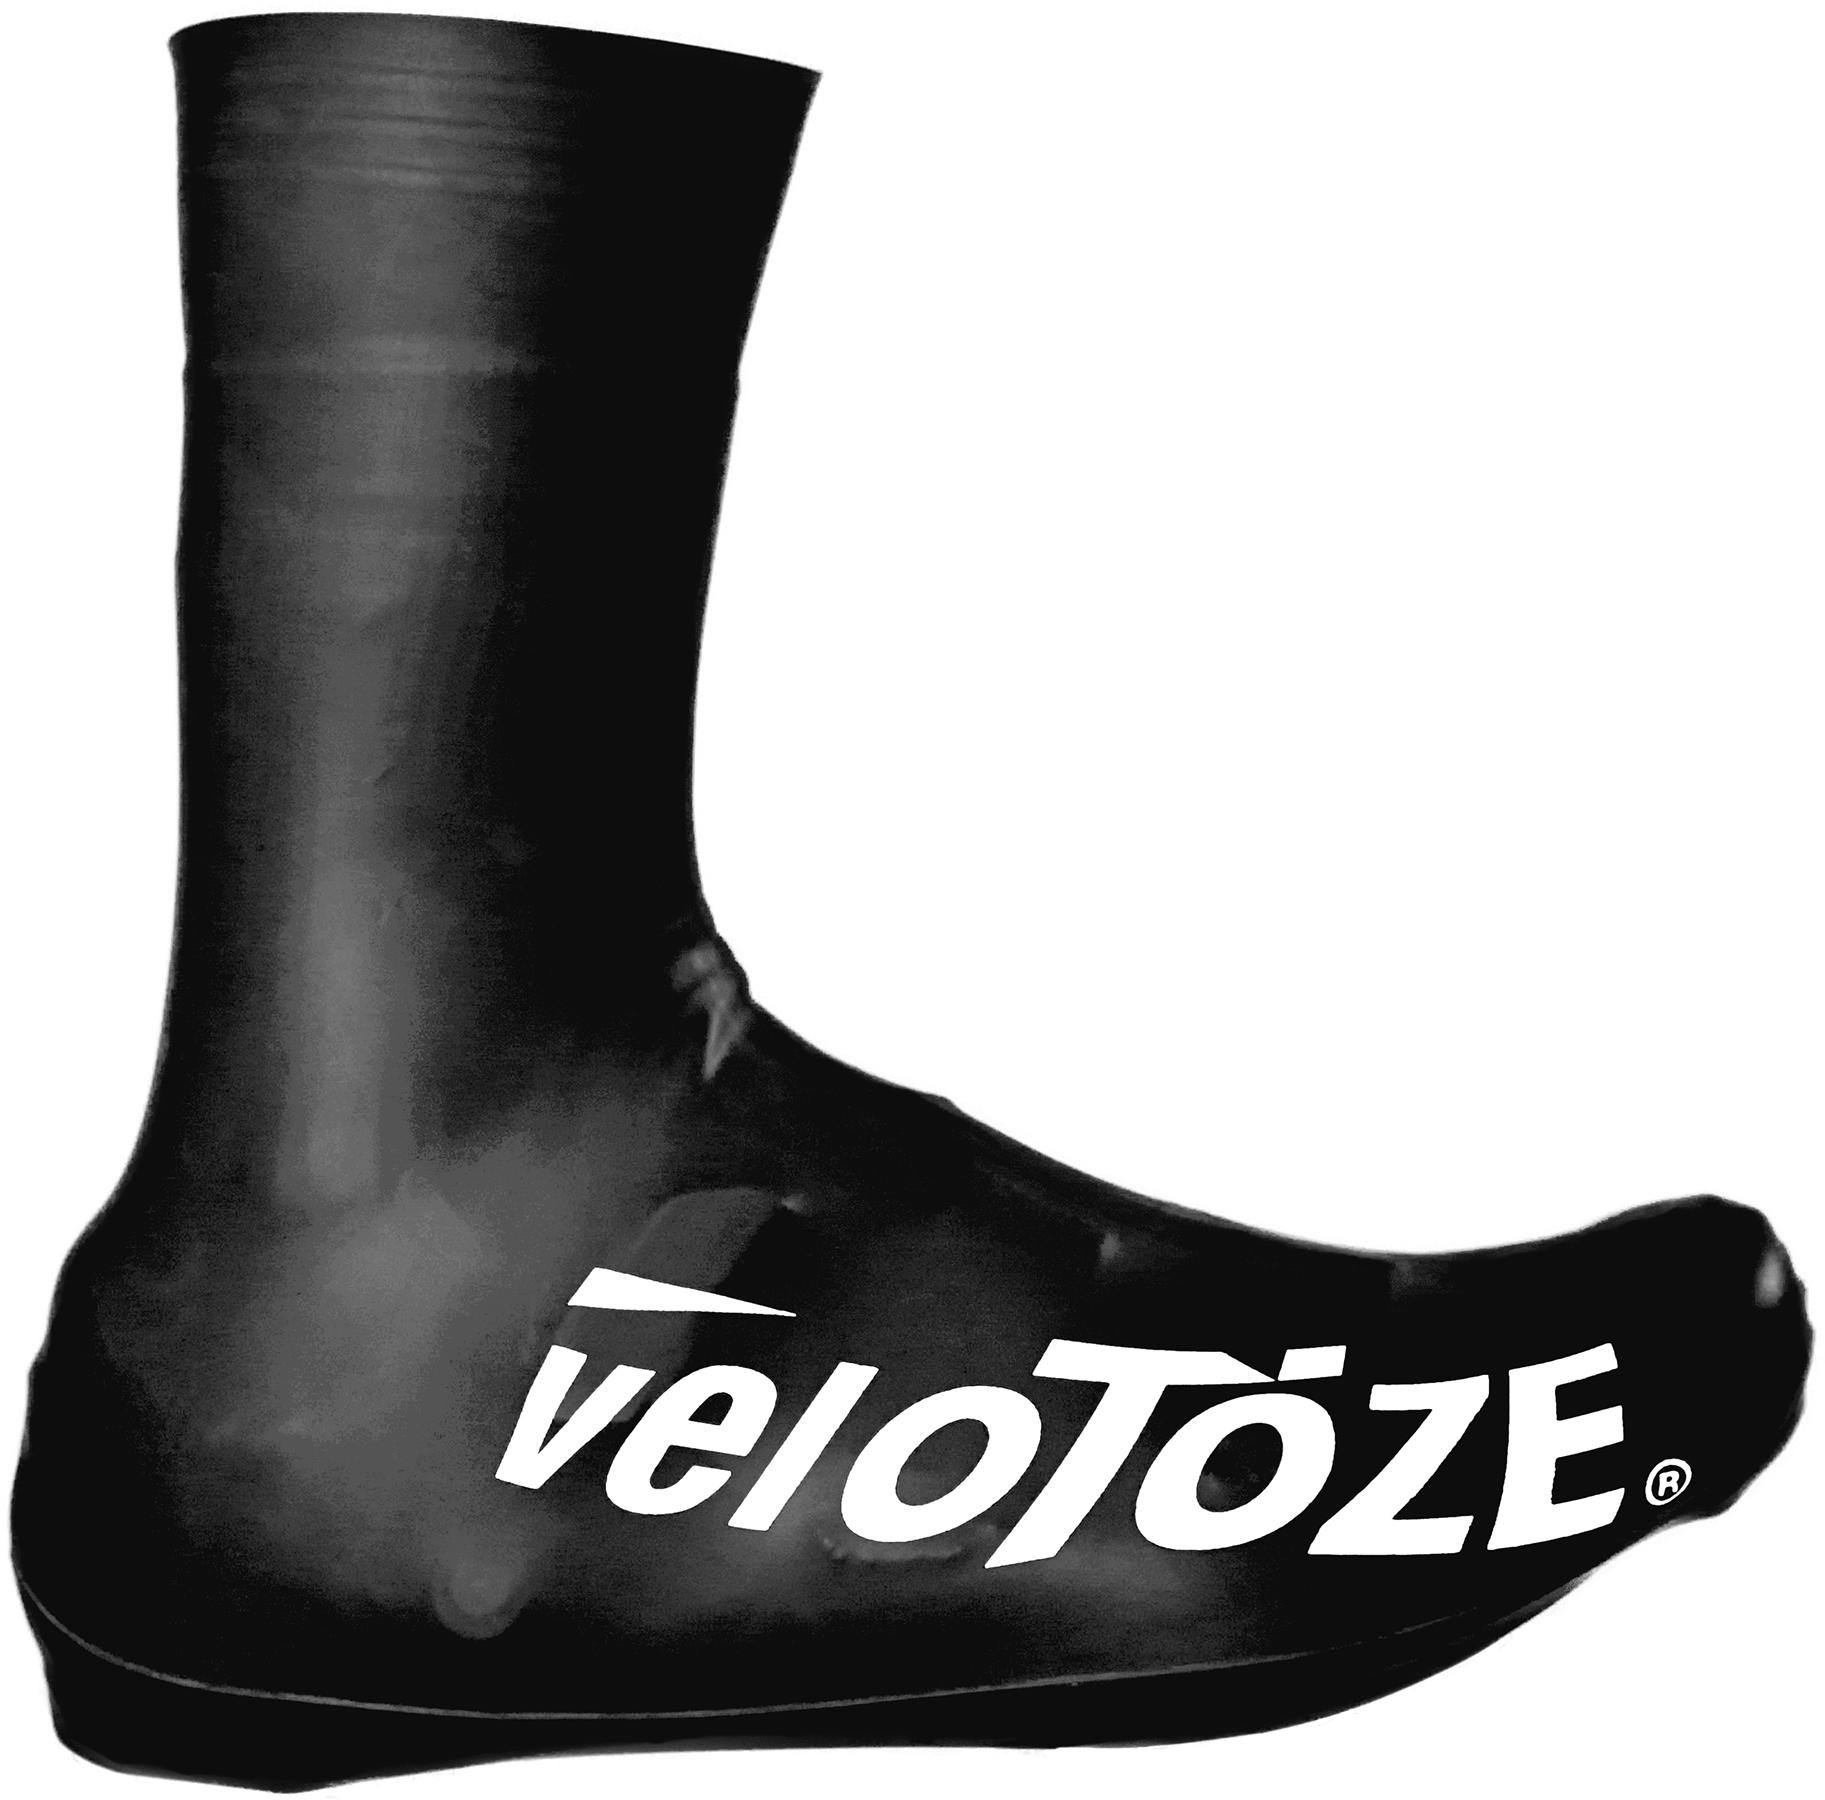 Velotoze Tall Shoe Covers 2.0 - Black